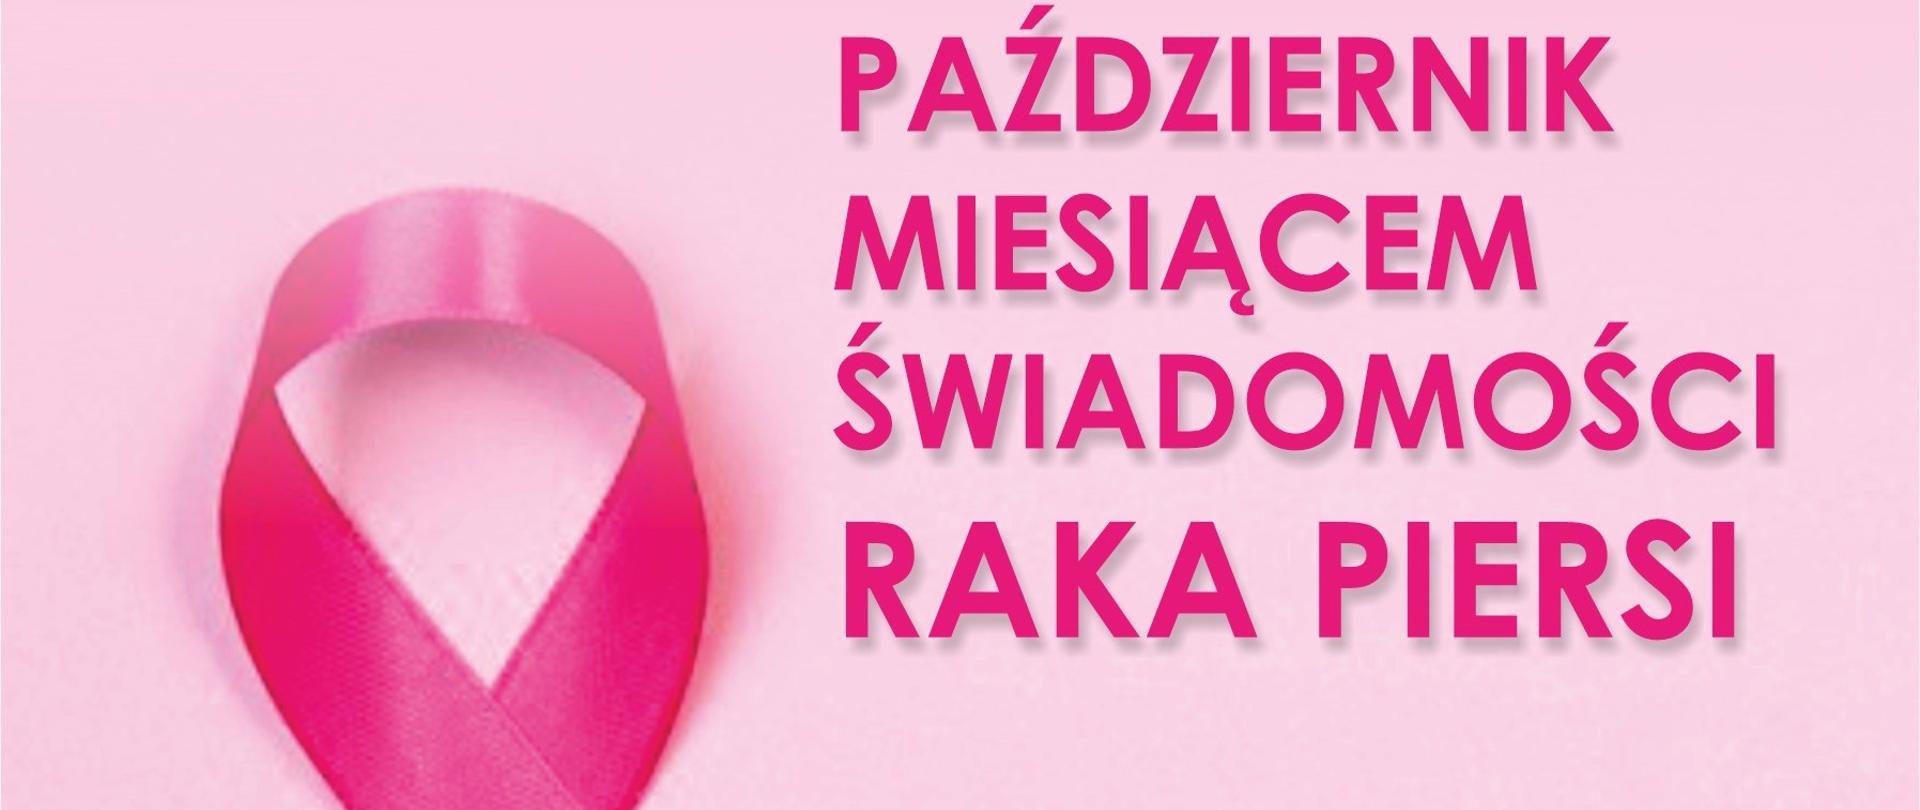 Grafika osadzona w kwadracie o lekko różowym tle, gdzie od lewej jest różowa wstążka, a w prawej górnej części różowy napis: "Październik miesiącem świadomości raka piersi".